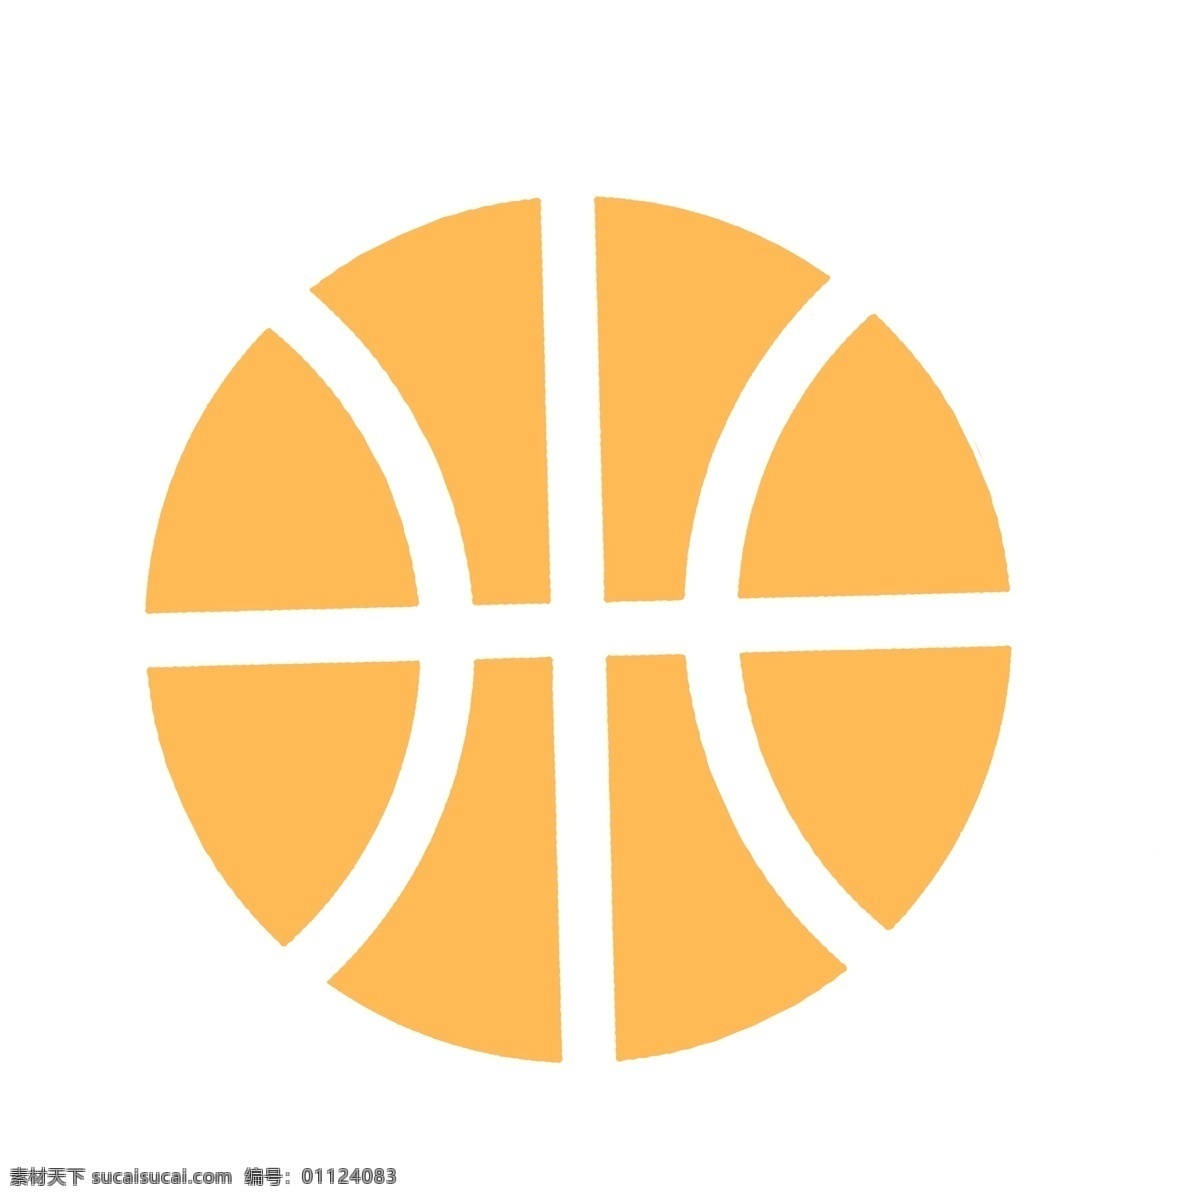 篮球 侧面 卡通 插画 球 体育 免 抠 矢量篮球 体育用品